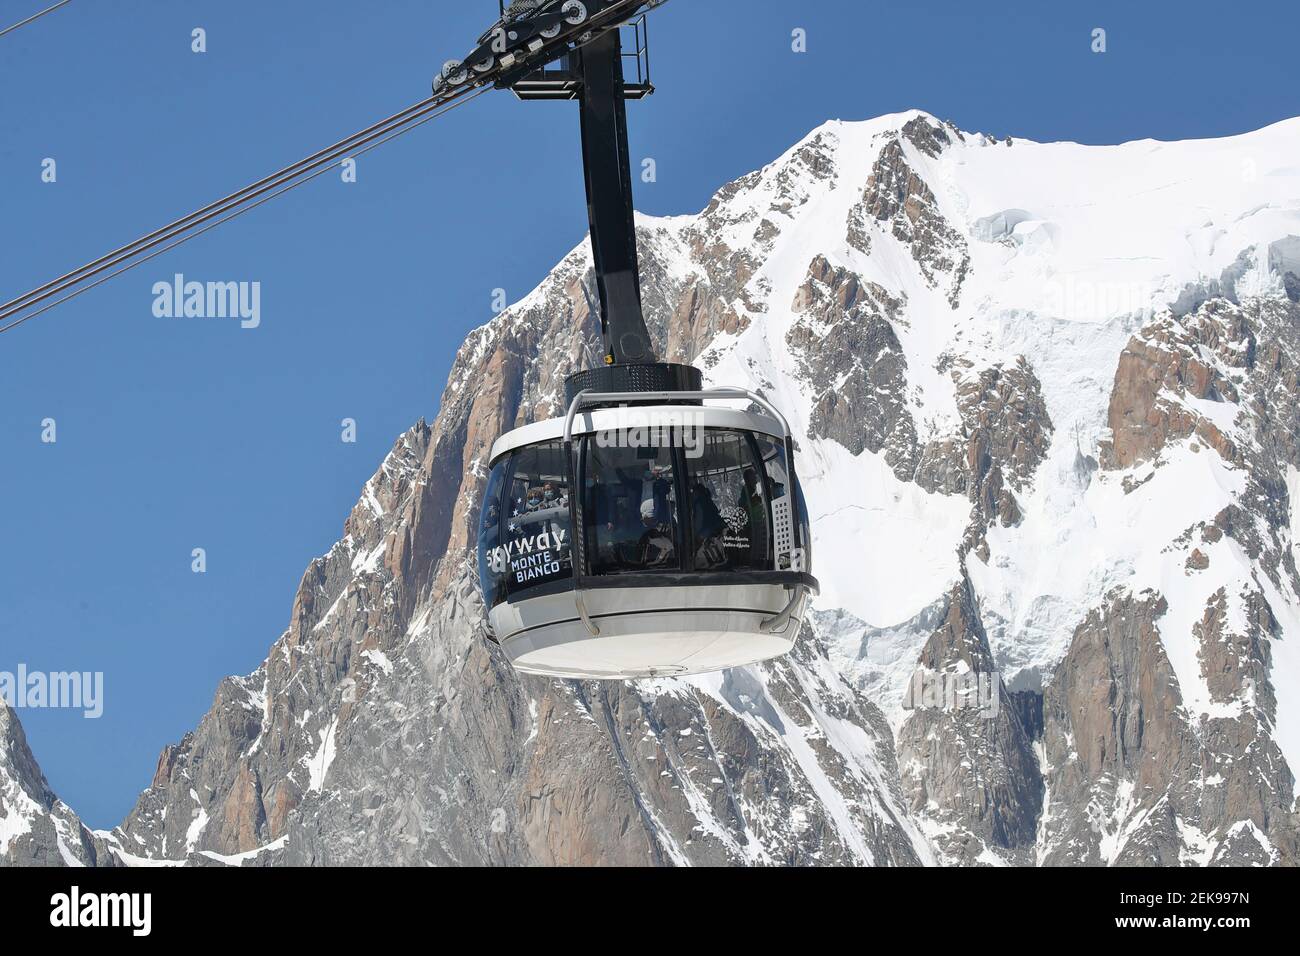 El teleférico Skyway Monte Bianco que conecta la ciudad italiana de  Courmayeur con Punta Helbronner en el lado sur del macizo del Mont Blanc.  Courmayeur (Italia) 7 de julio de 2020 (Foto